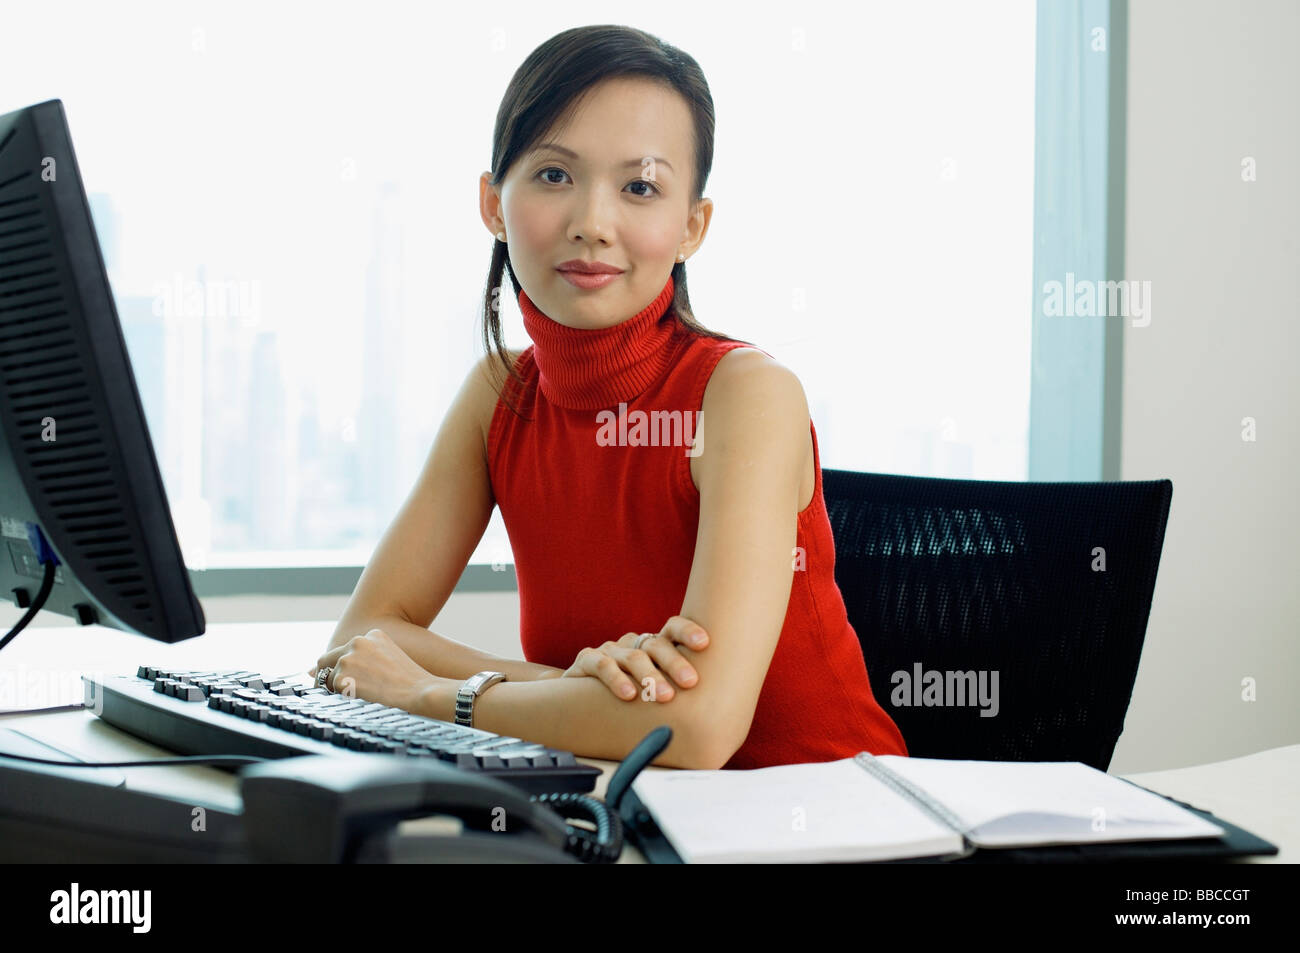 https://c8.alamy.com/comp/BBCCGT/female-executive-sitting-at-office-desk-portrait-BBCCGT.jpg